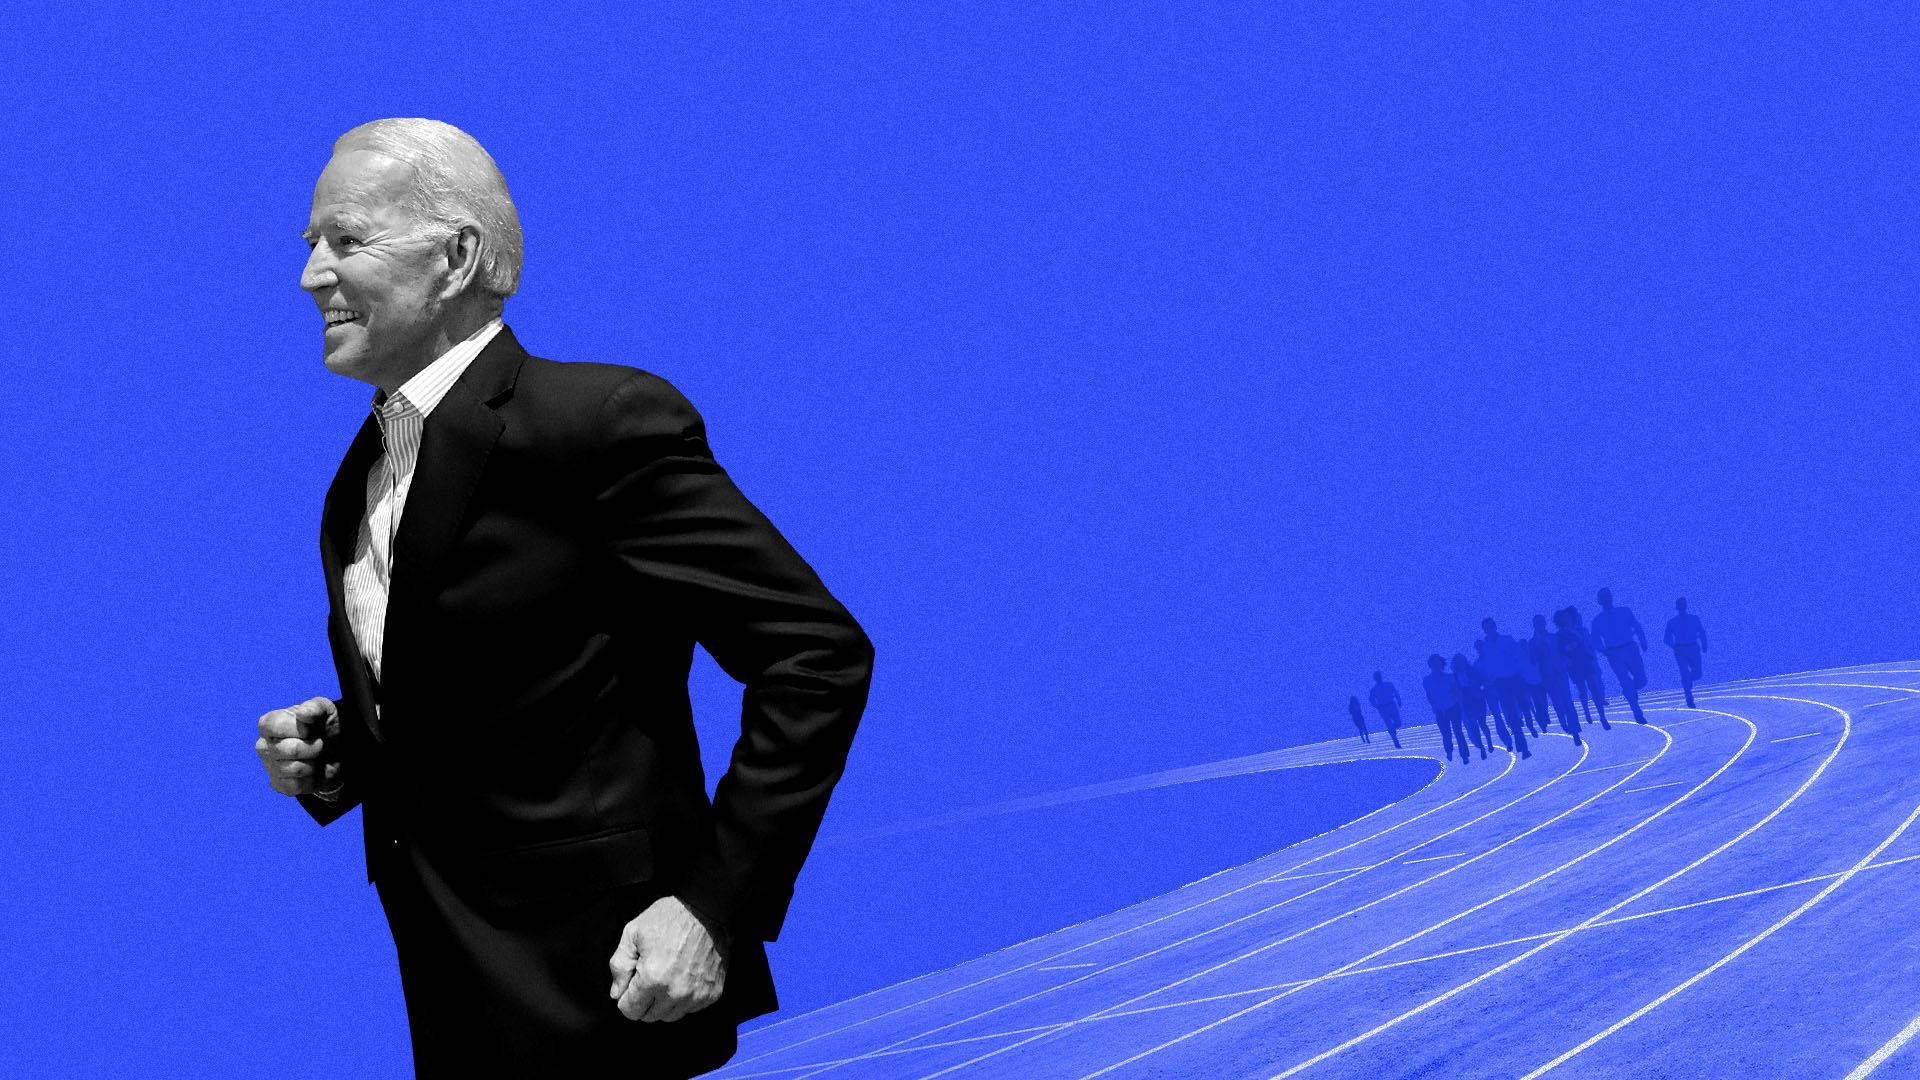 Joe Biden Running For President Of The United States Background